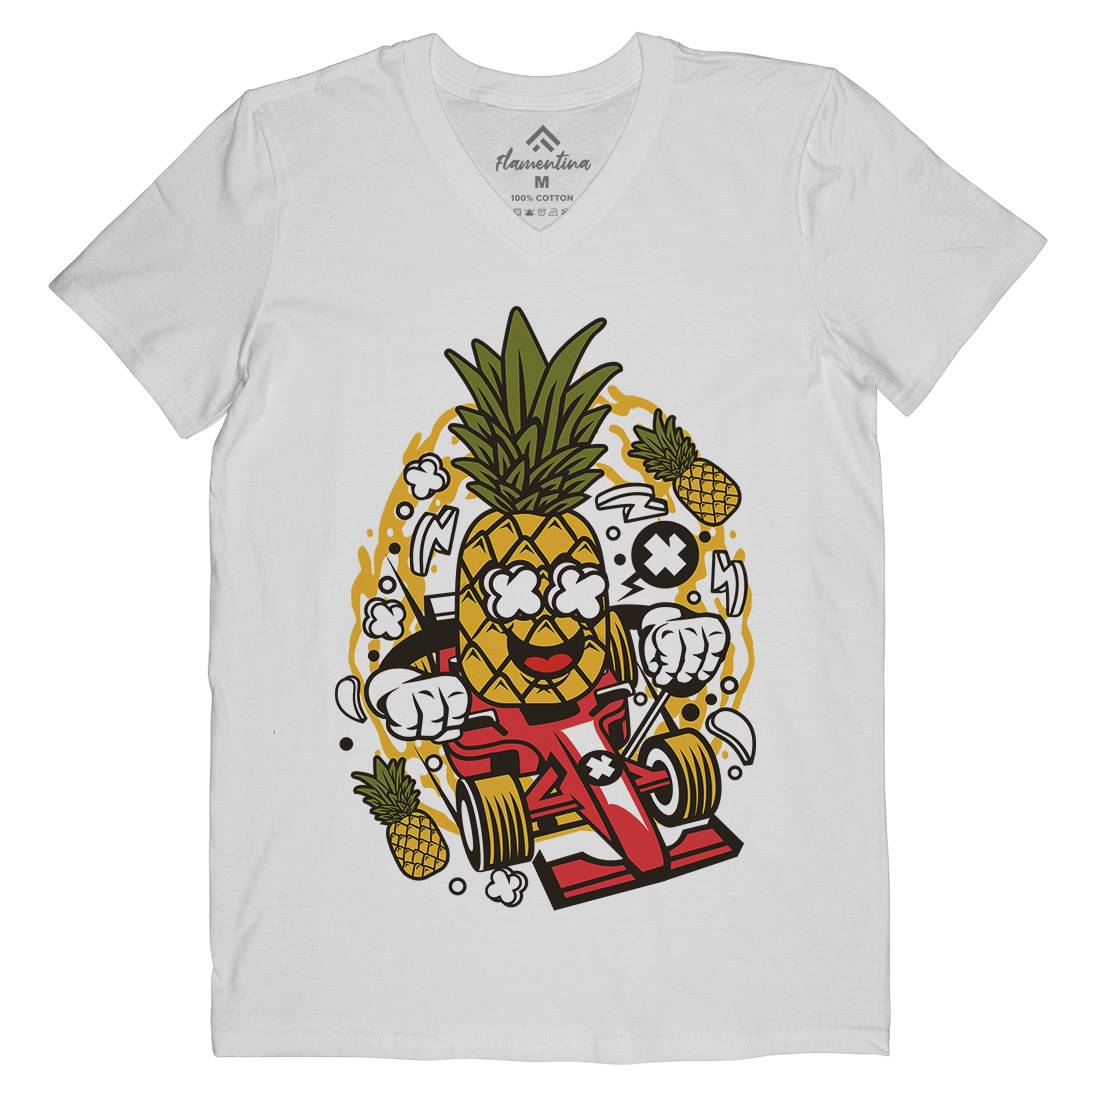 Pineapple Formula Racer Mens Organic V-Neck T-Shirt Sport C606